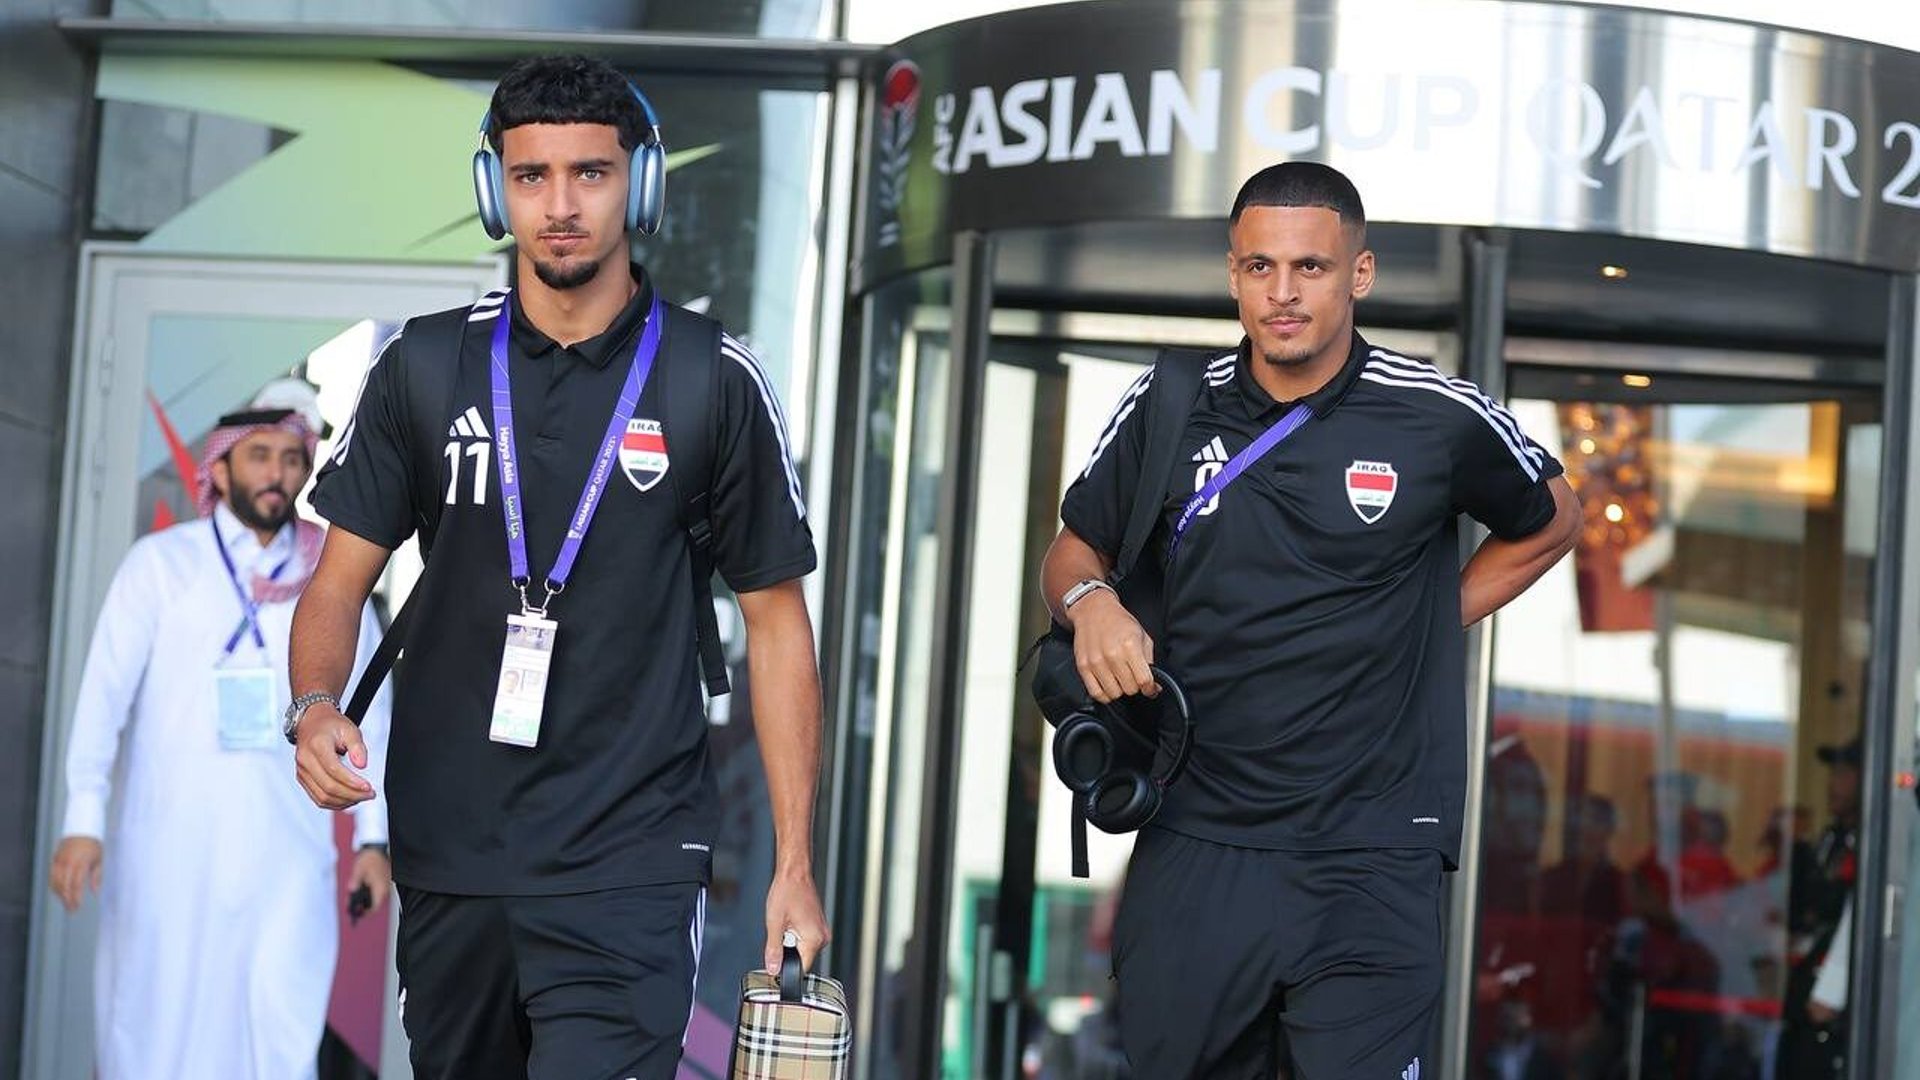 صور من الدوحة: المنتخب الوطني يغادر الفندق لمواجهة اليابان في المدينة التعليمية